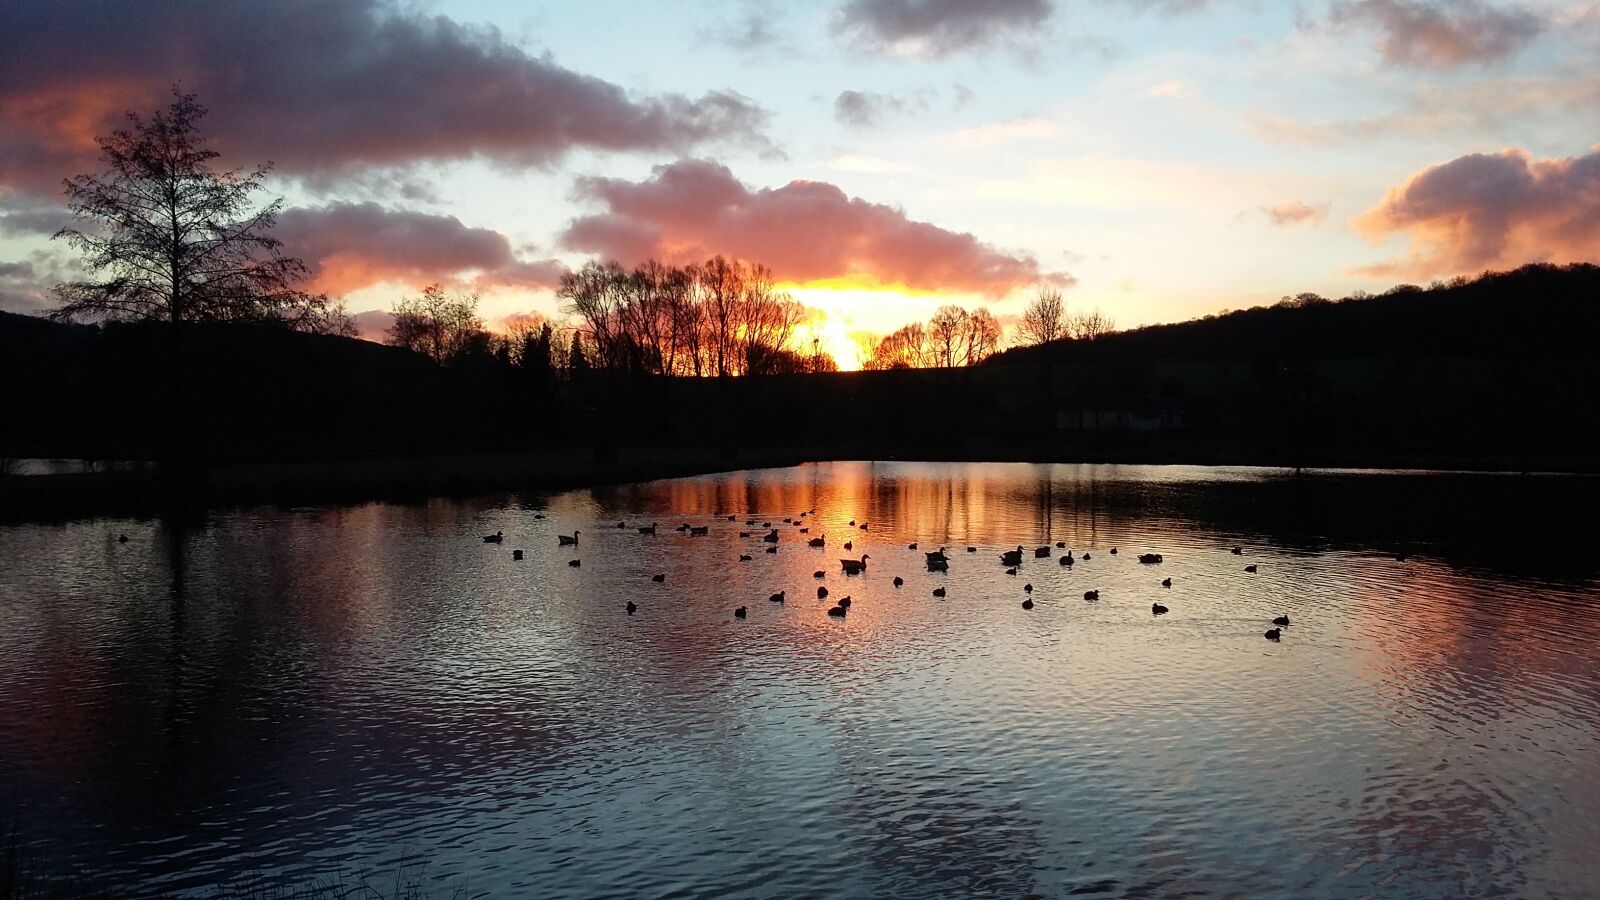 Samsung Galaxy A3 sample photo. Lake, ducks, sunrise photography